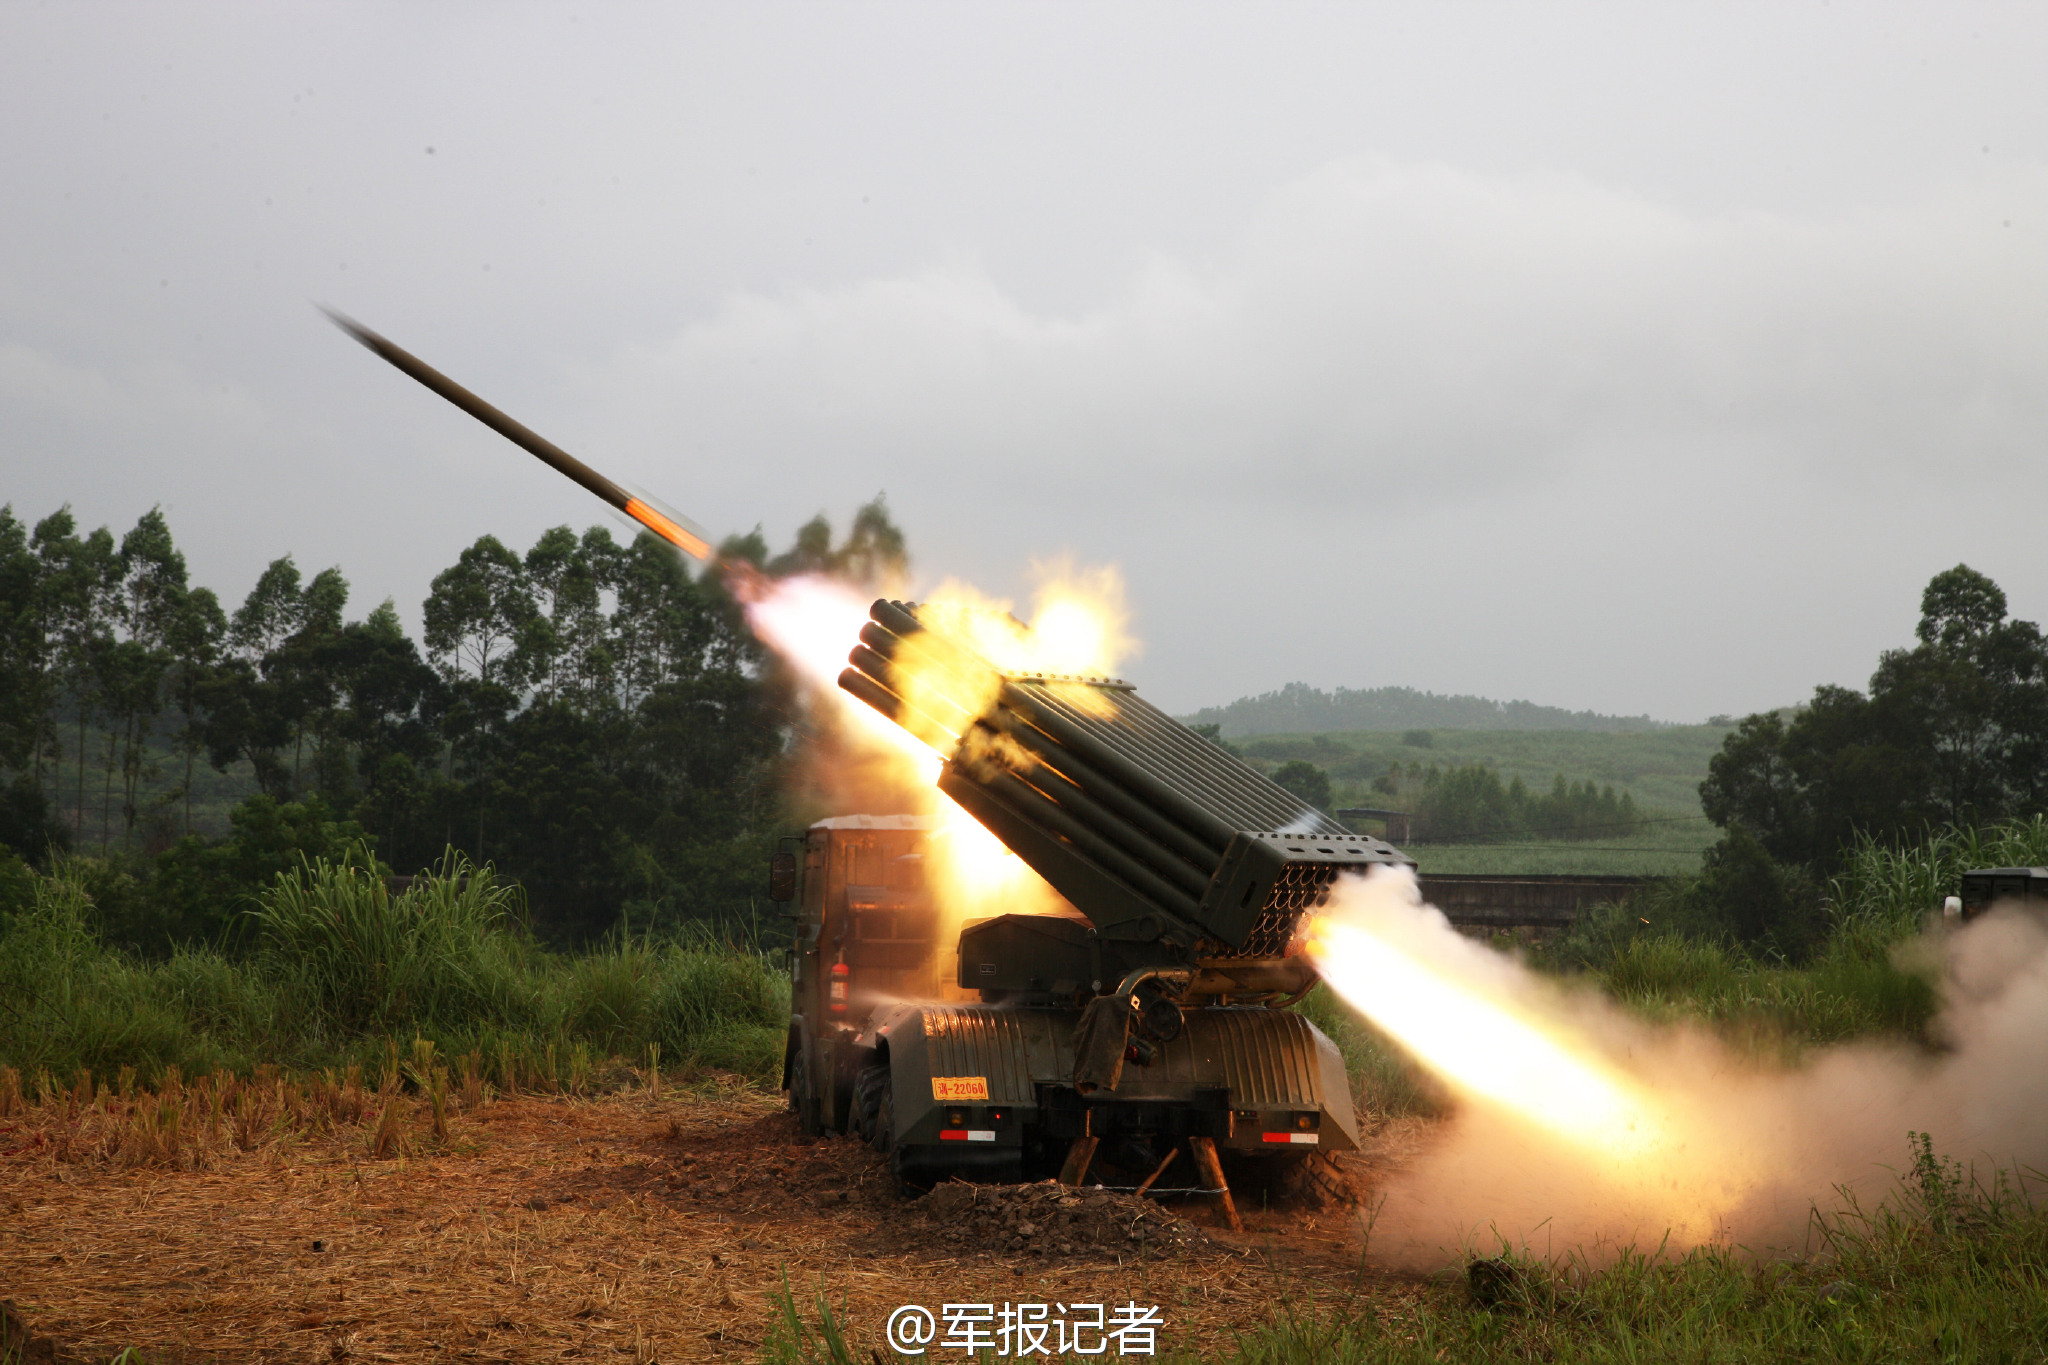 高清:直击山地步兵旅火箭炮实弹射击现场